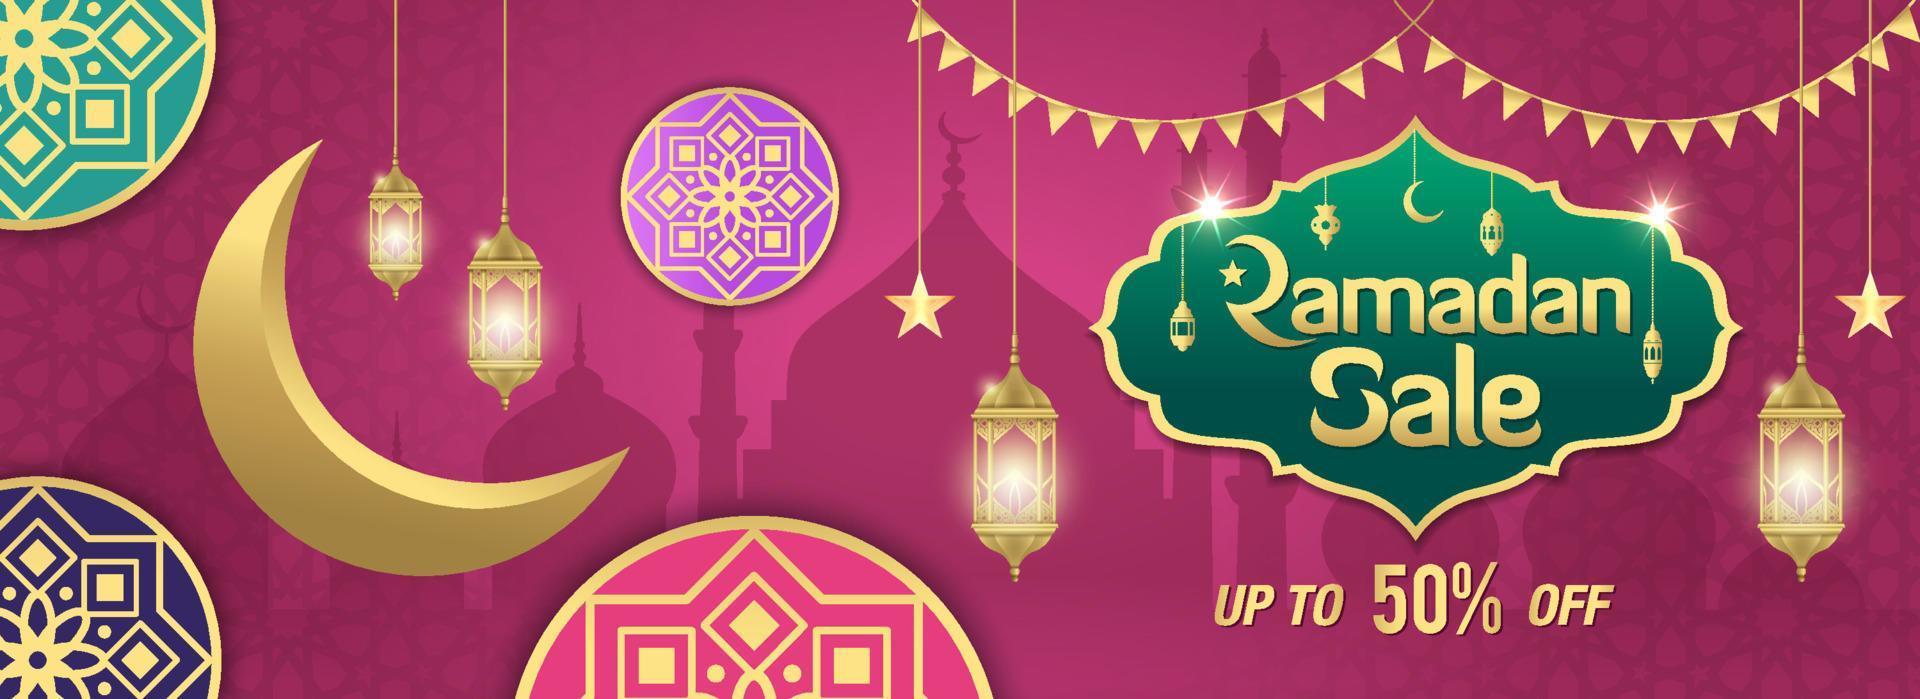 vendita ramadan, intestazione web o banner design con cornice dorata lucida, lanterne arabe e luna crescente dorata su sfondo viola. vettore